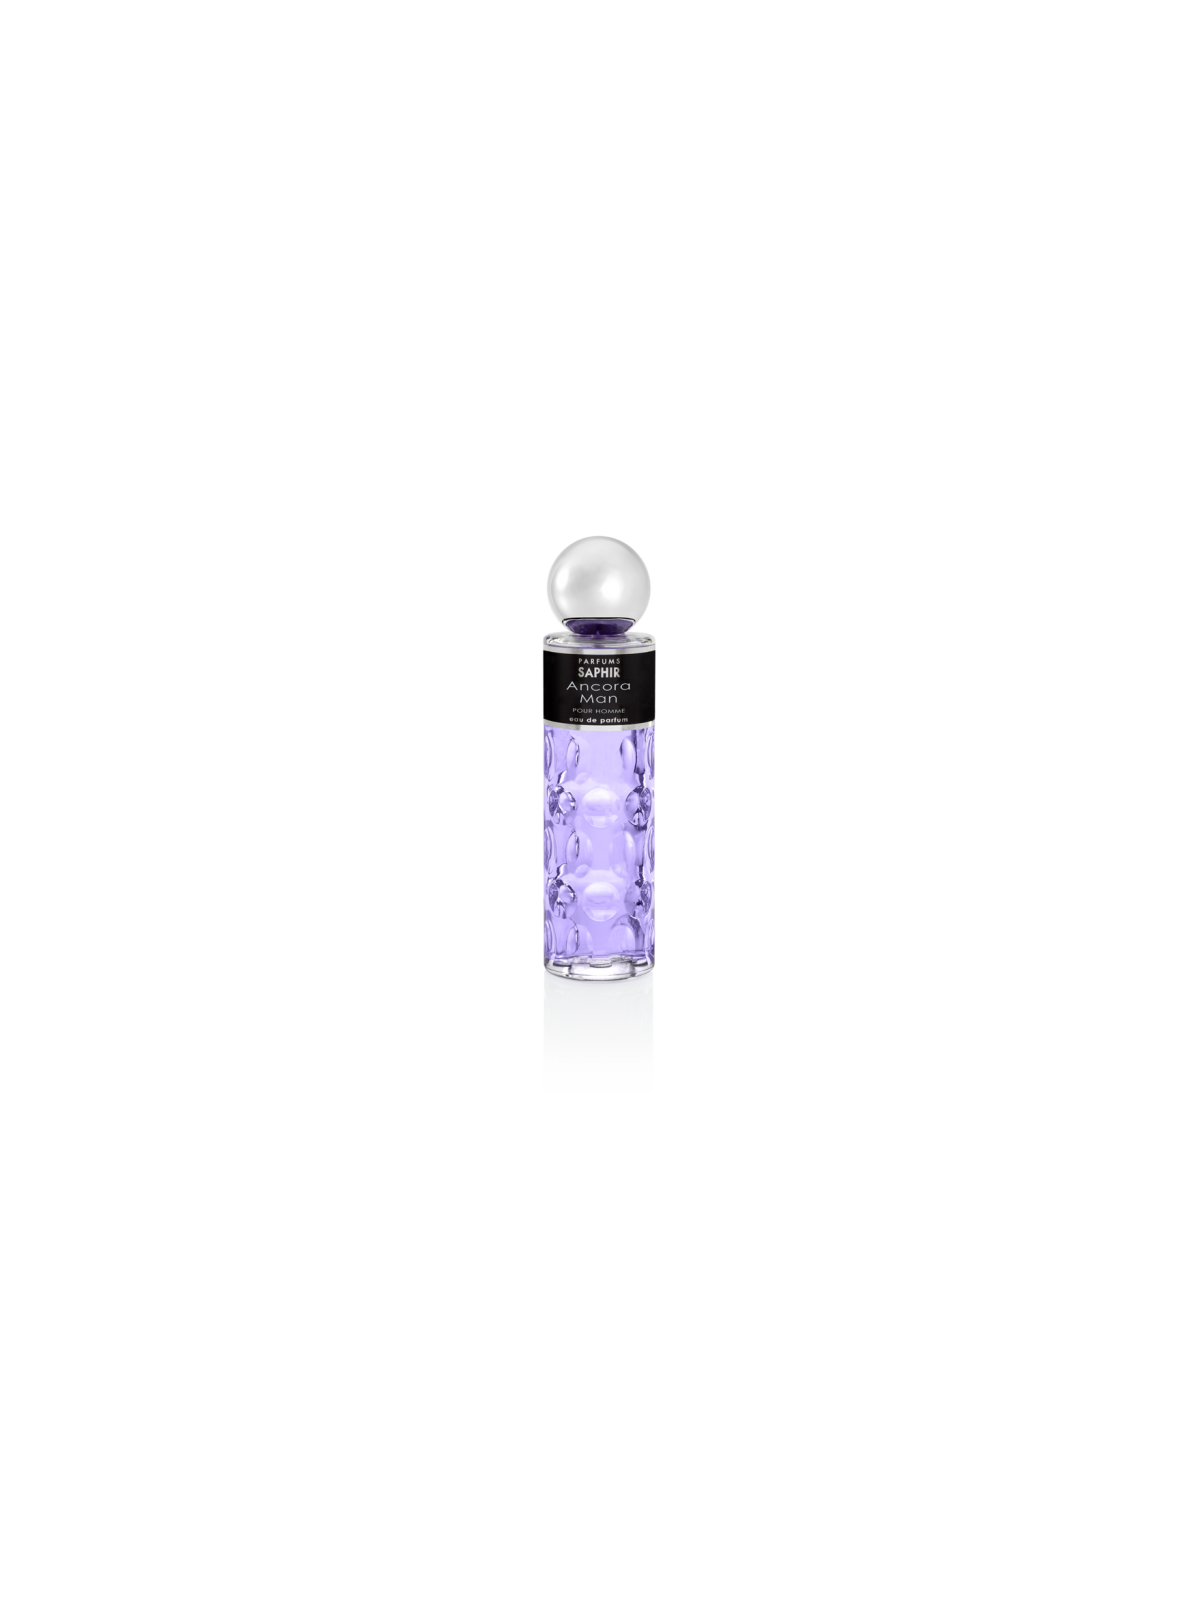 Comprar Perfume Saphir Ancora Man 200ML. en Perfumes para hombre por sólo 12,90 € o un precio específico de 12,90 € en Thalie Care